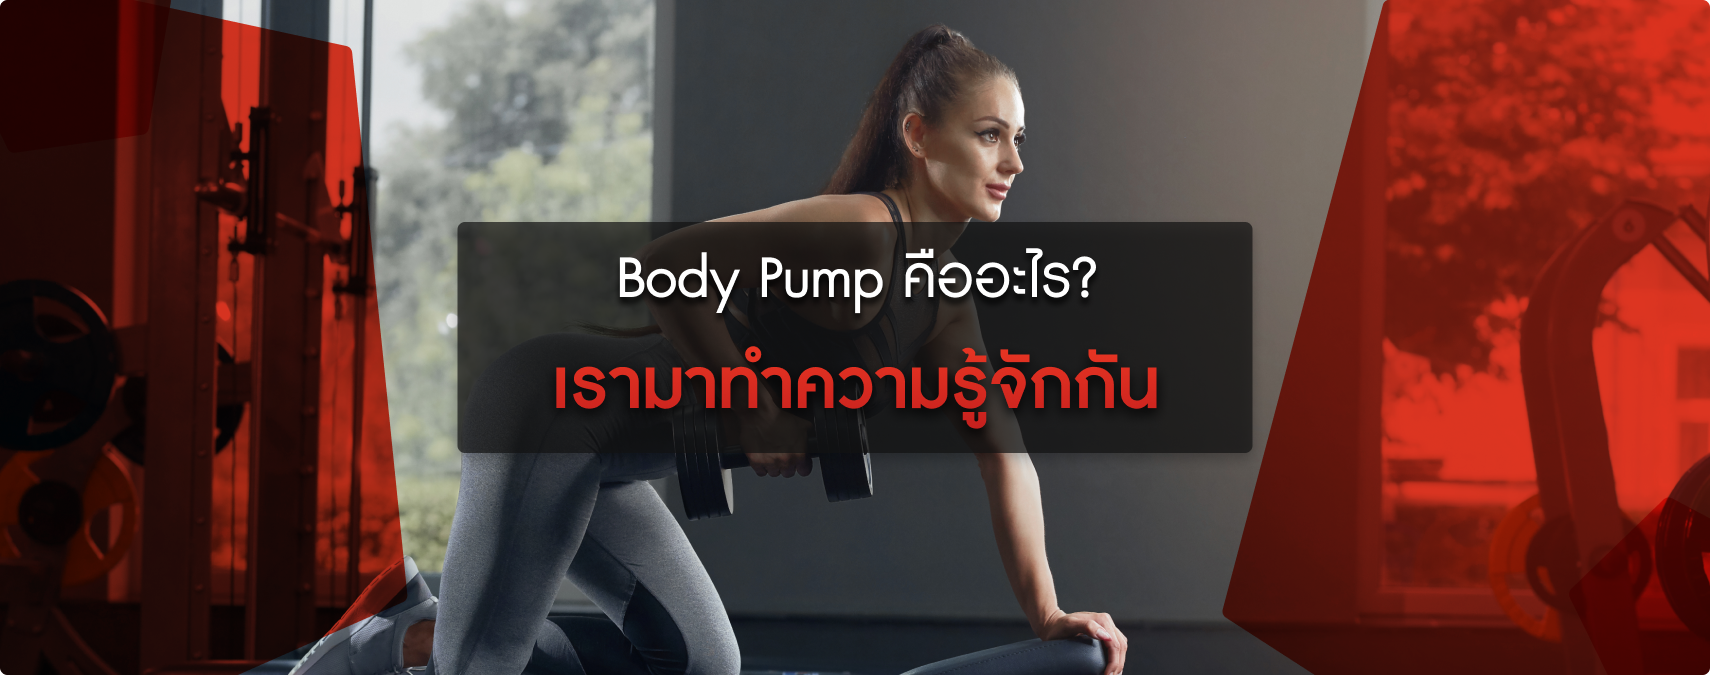 มาทำความรู้จักกับ Body Pump คืออะไร